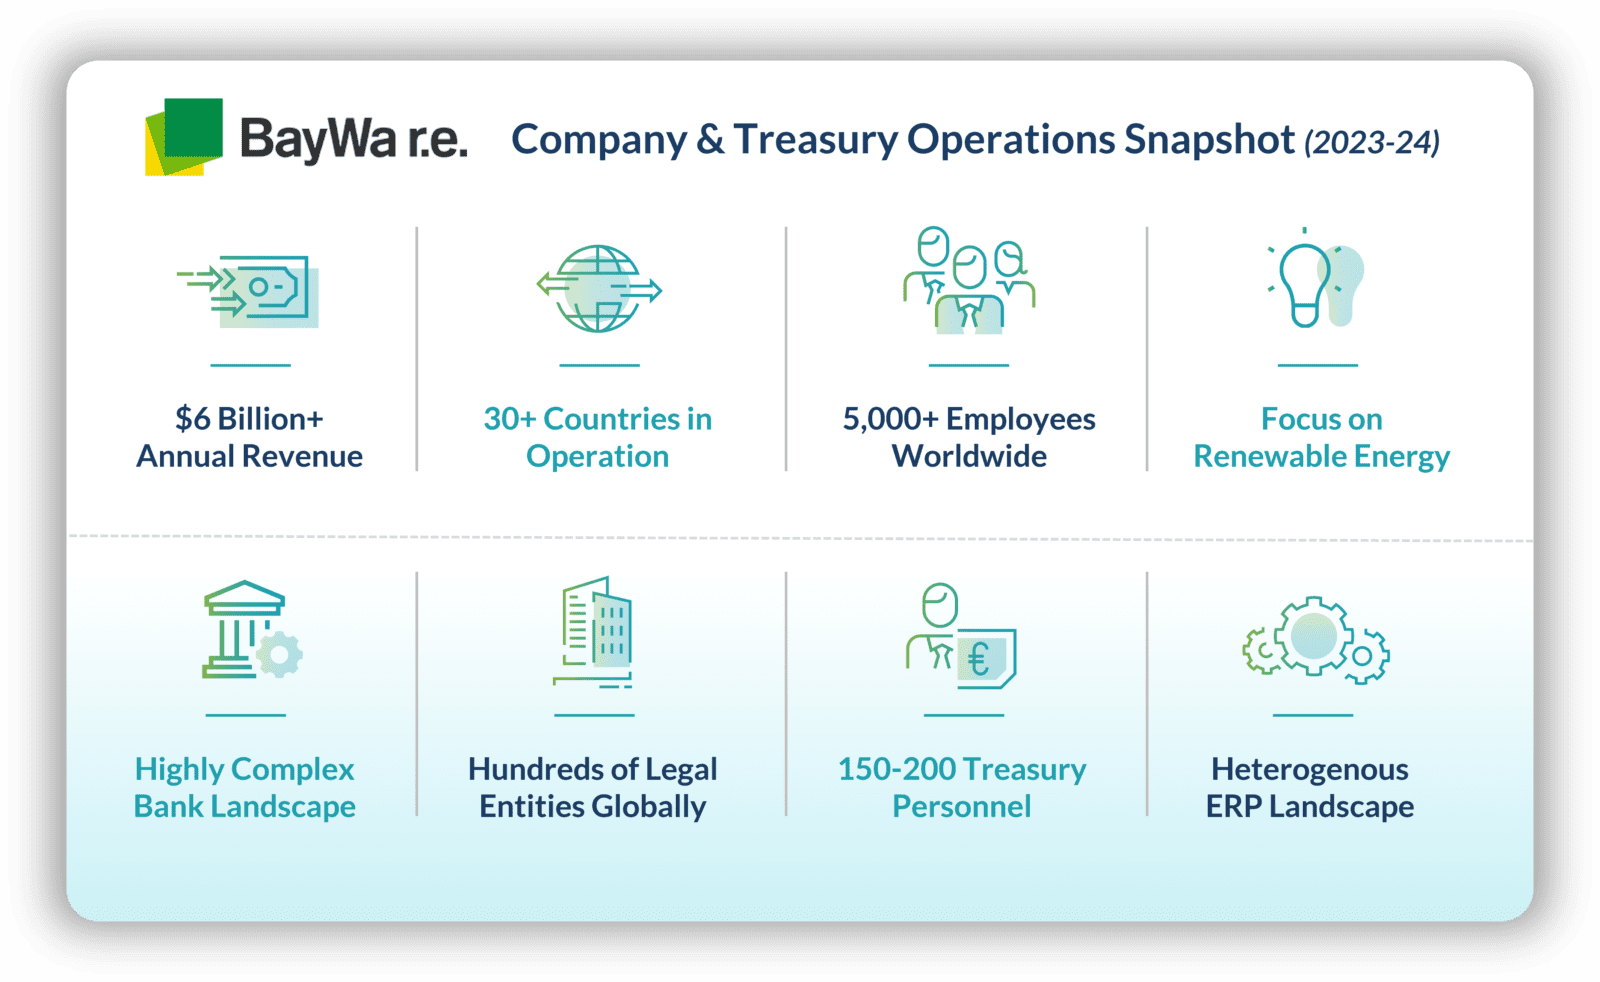 BayWa r.e. company and treasury operations at-a-glance. 